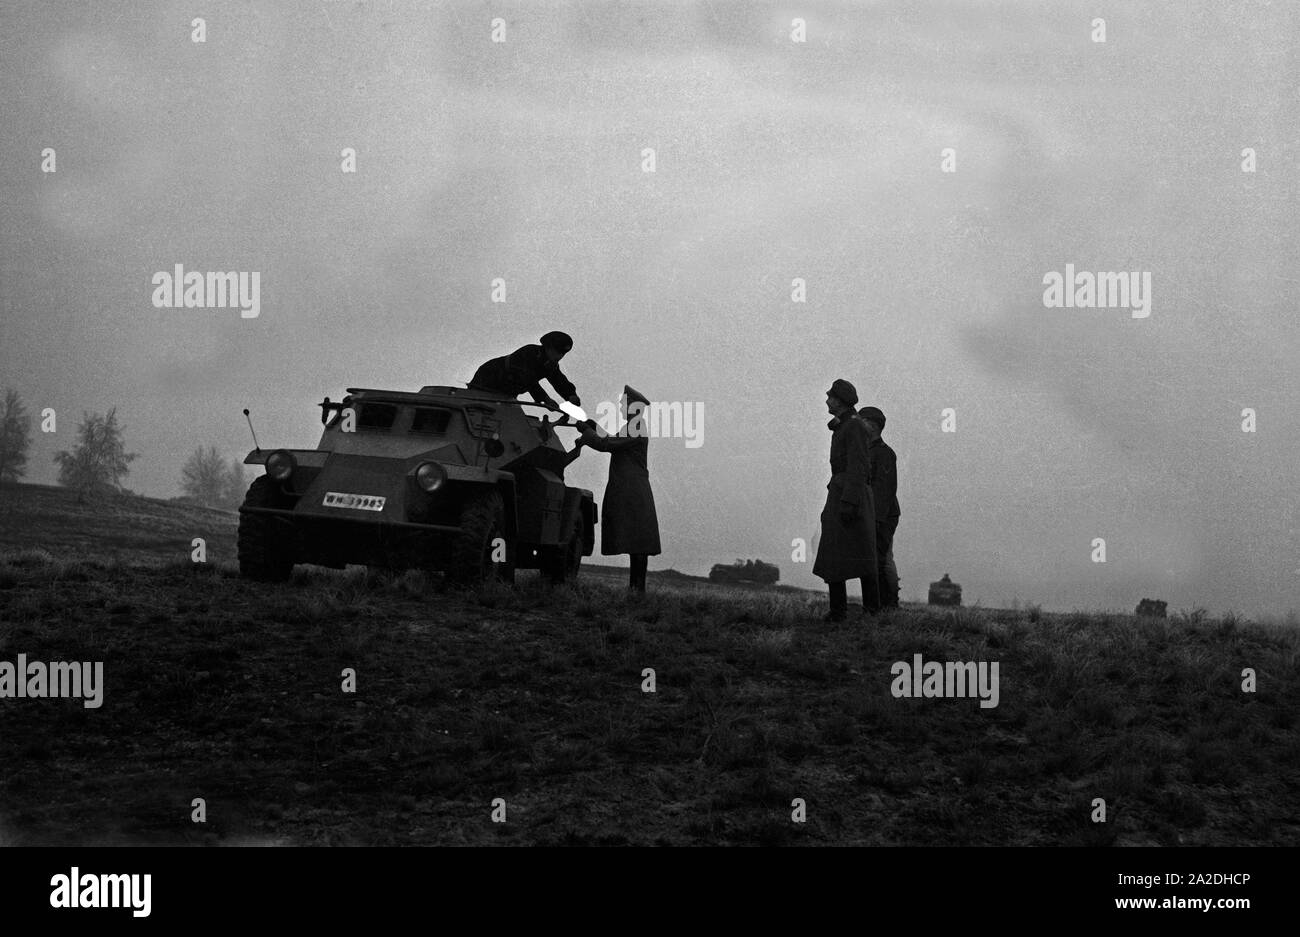 Offizier auf dem Truppenübungsplatz eine Komposition des Typen Panzerspähwagen Sd.Kfz.221, Deutschland 1930er Jahre. Ein Offizier in einem miltary Training Boden mit einer gepanzerten Scout Car, Deutschland 1930. Stockfoto